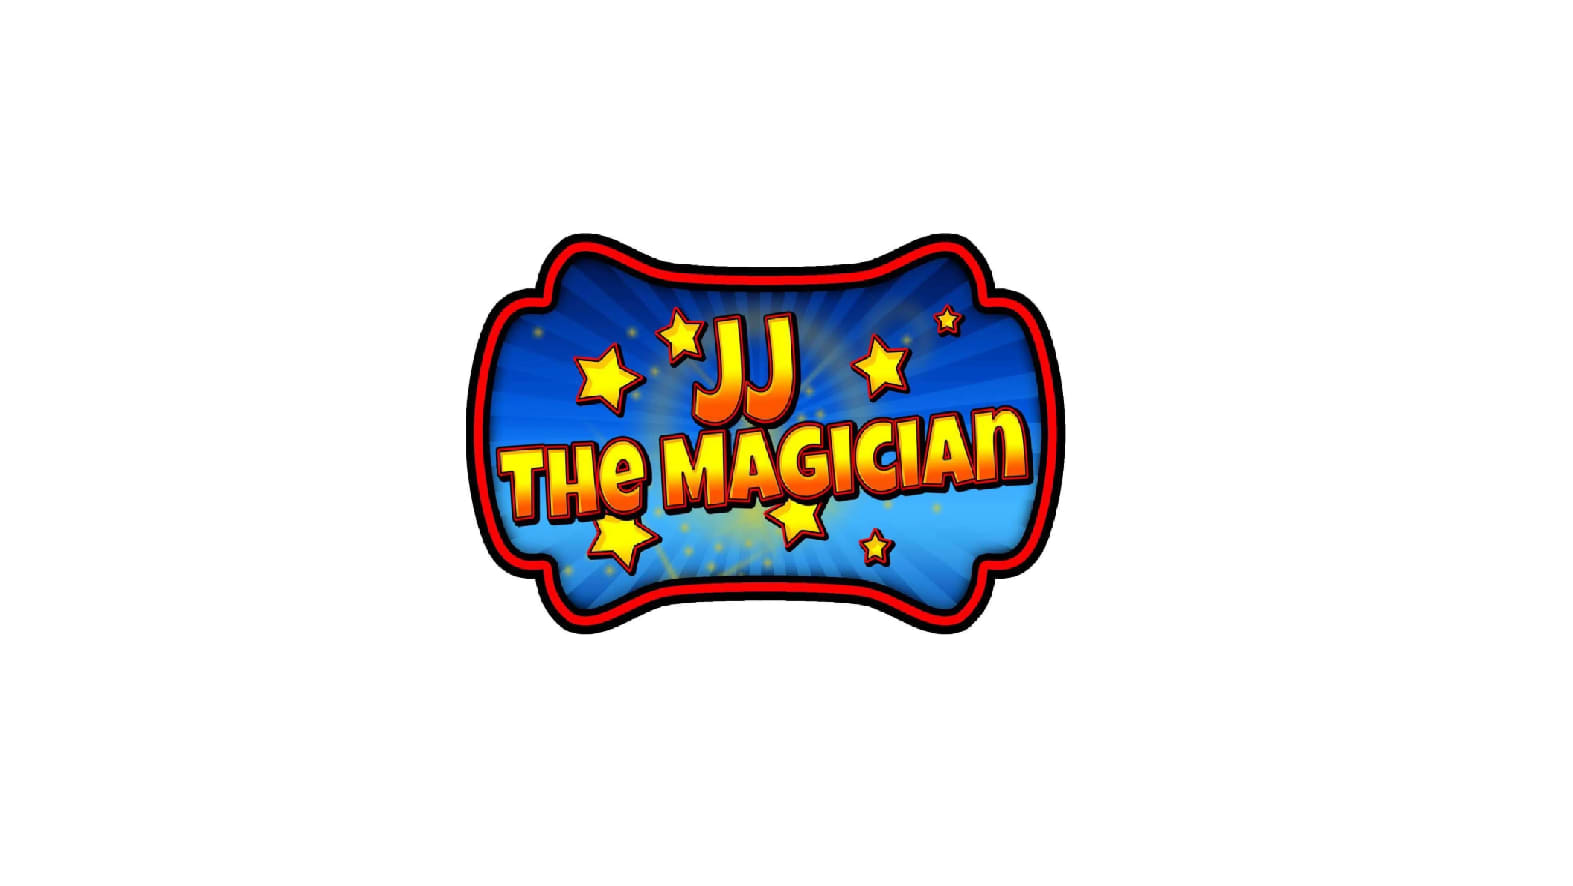 JJ The Magician